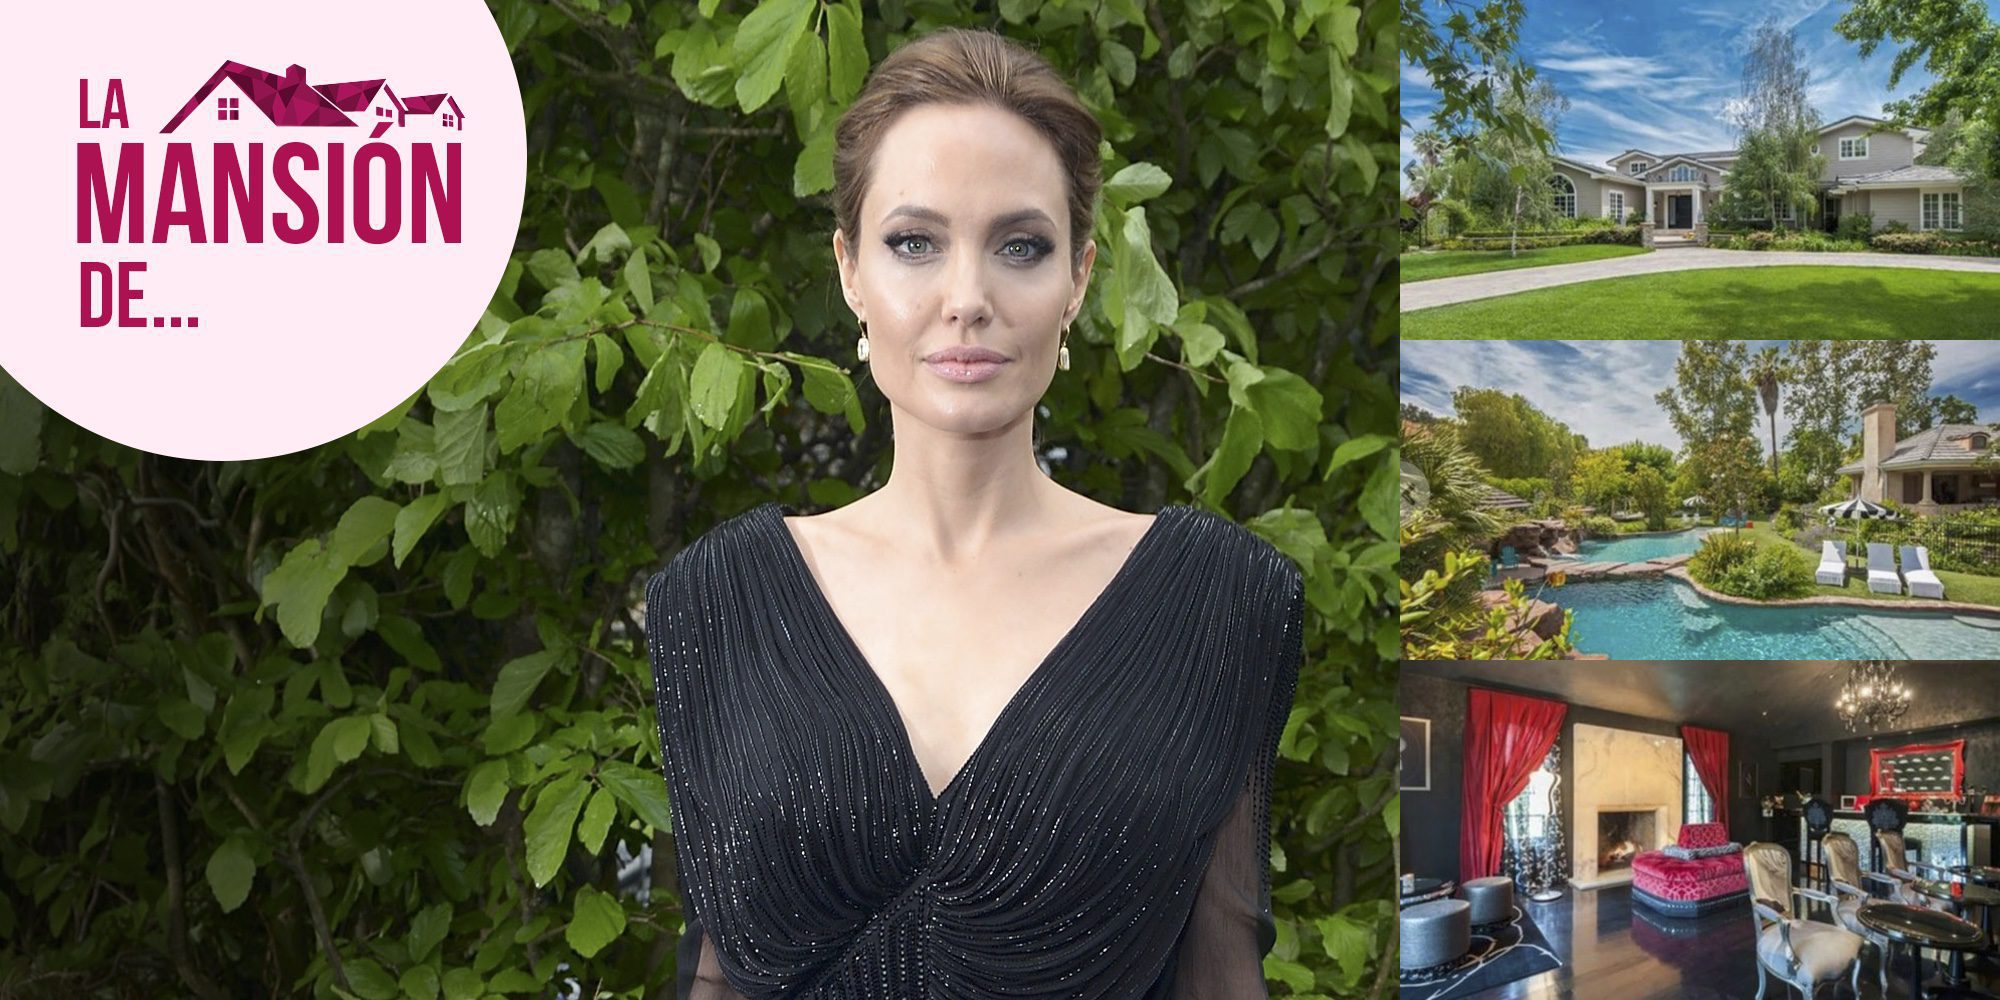 De Malibú a Hidden Hills: así es el nuevo refugio de Angelina Jolie tras su divorcio con Brad Pitt